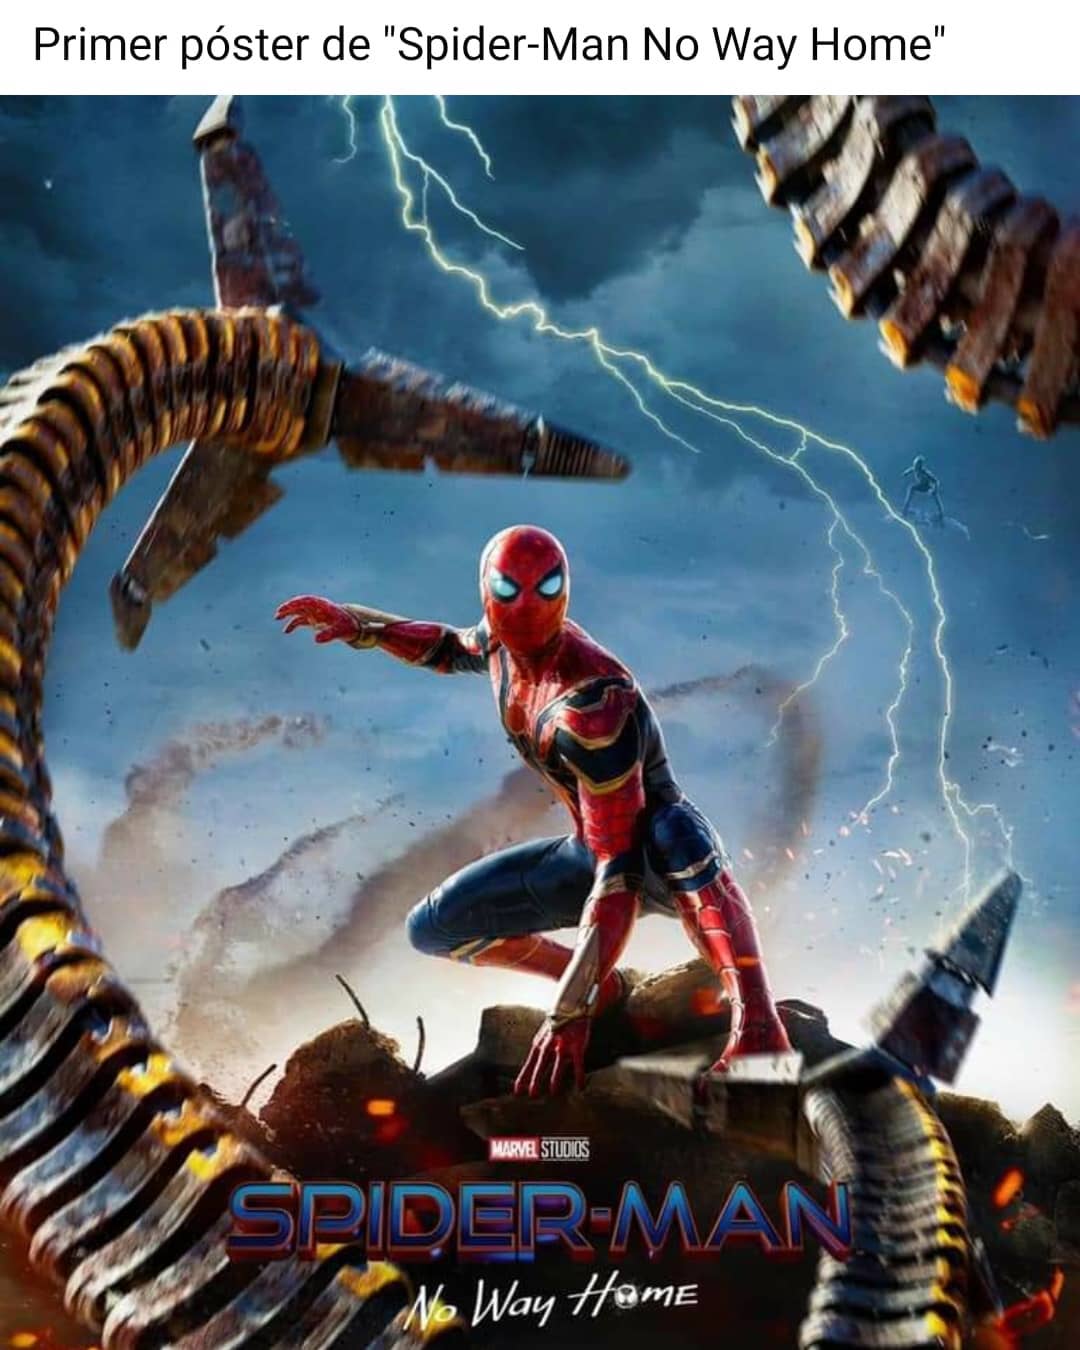 Primer póster de "Spider-Man No Way Home".